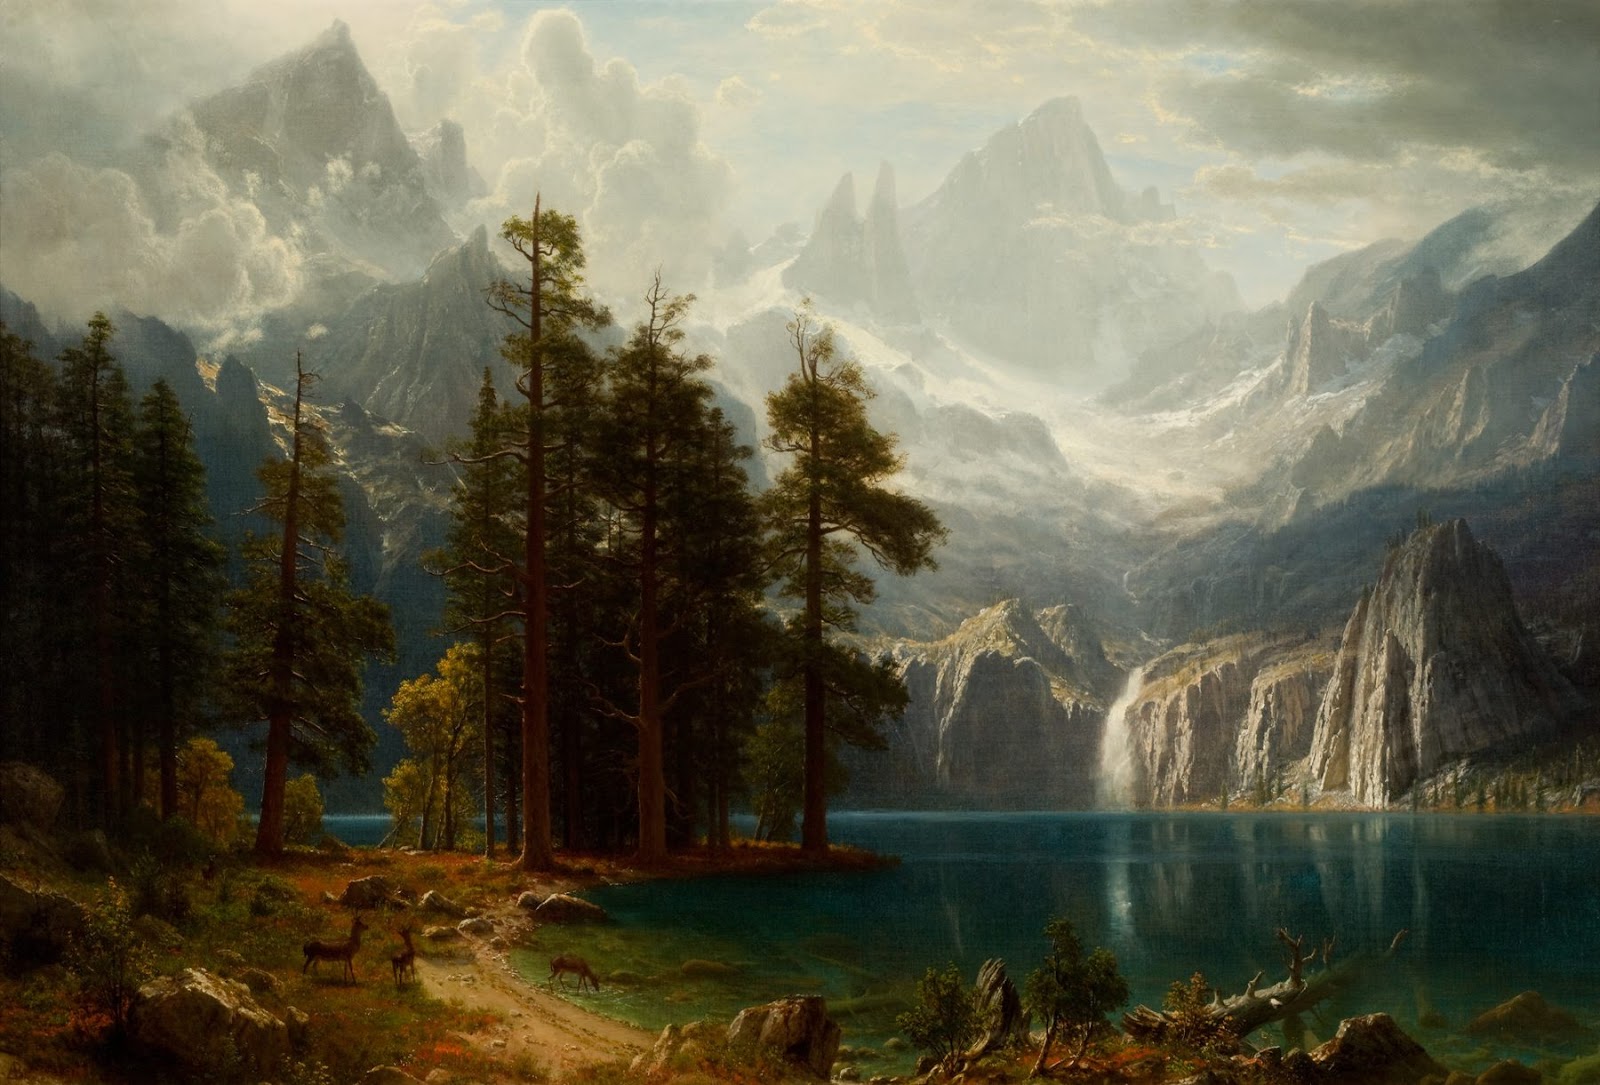 Counterlight's Peculiars: Albert Bierstadt Goes West